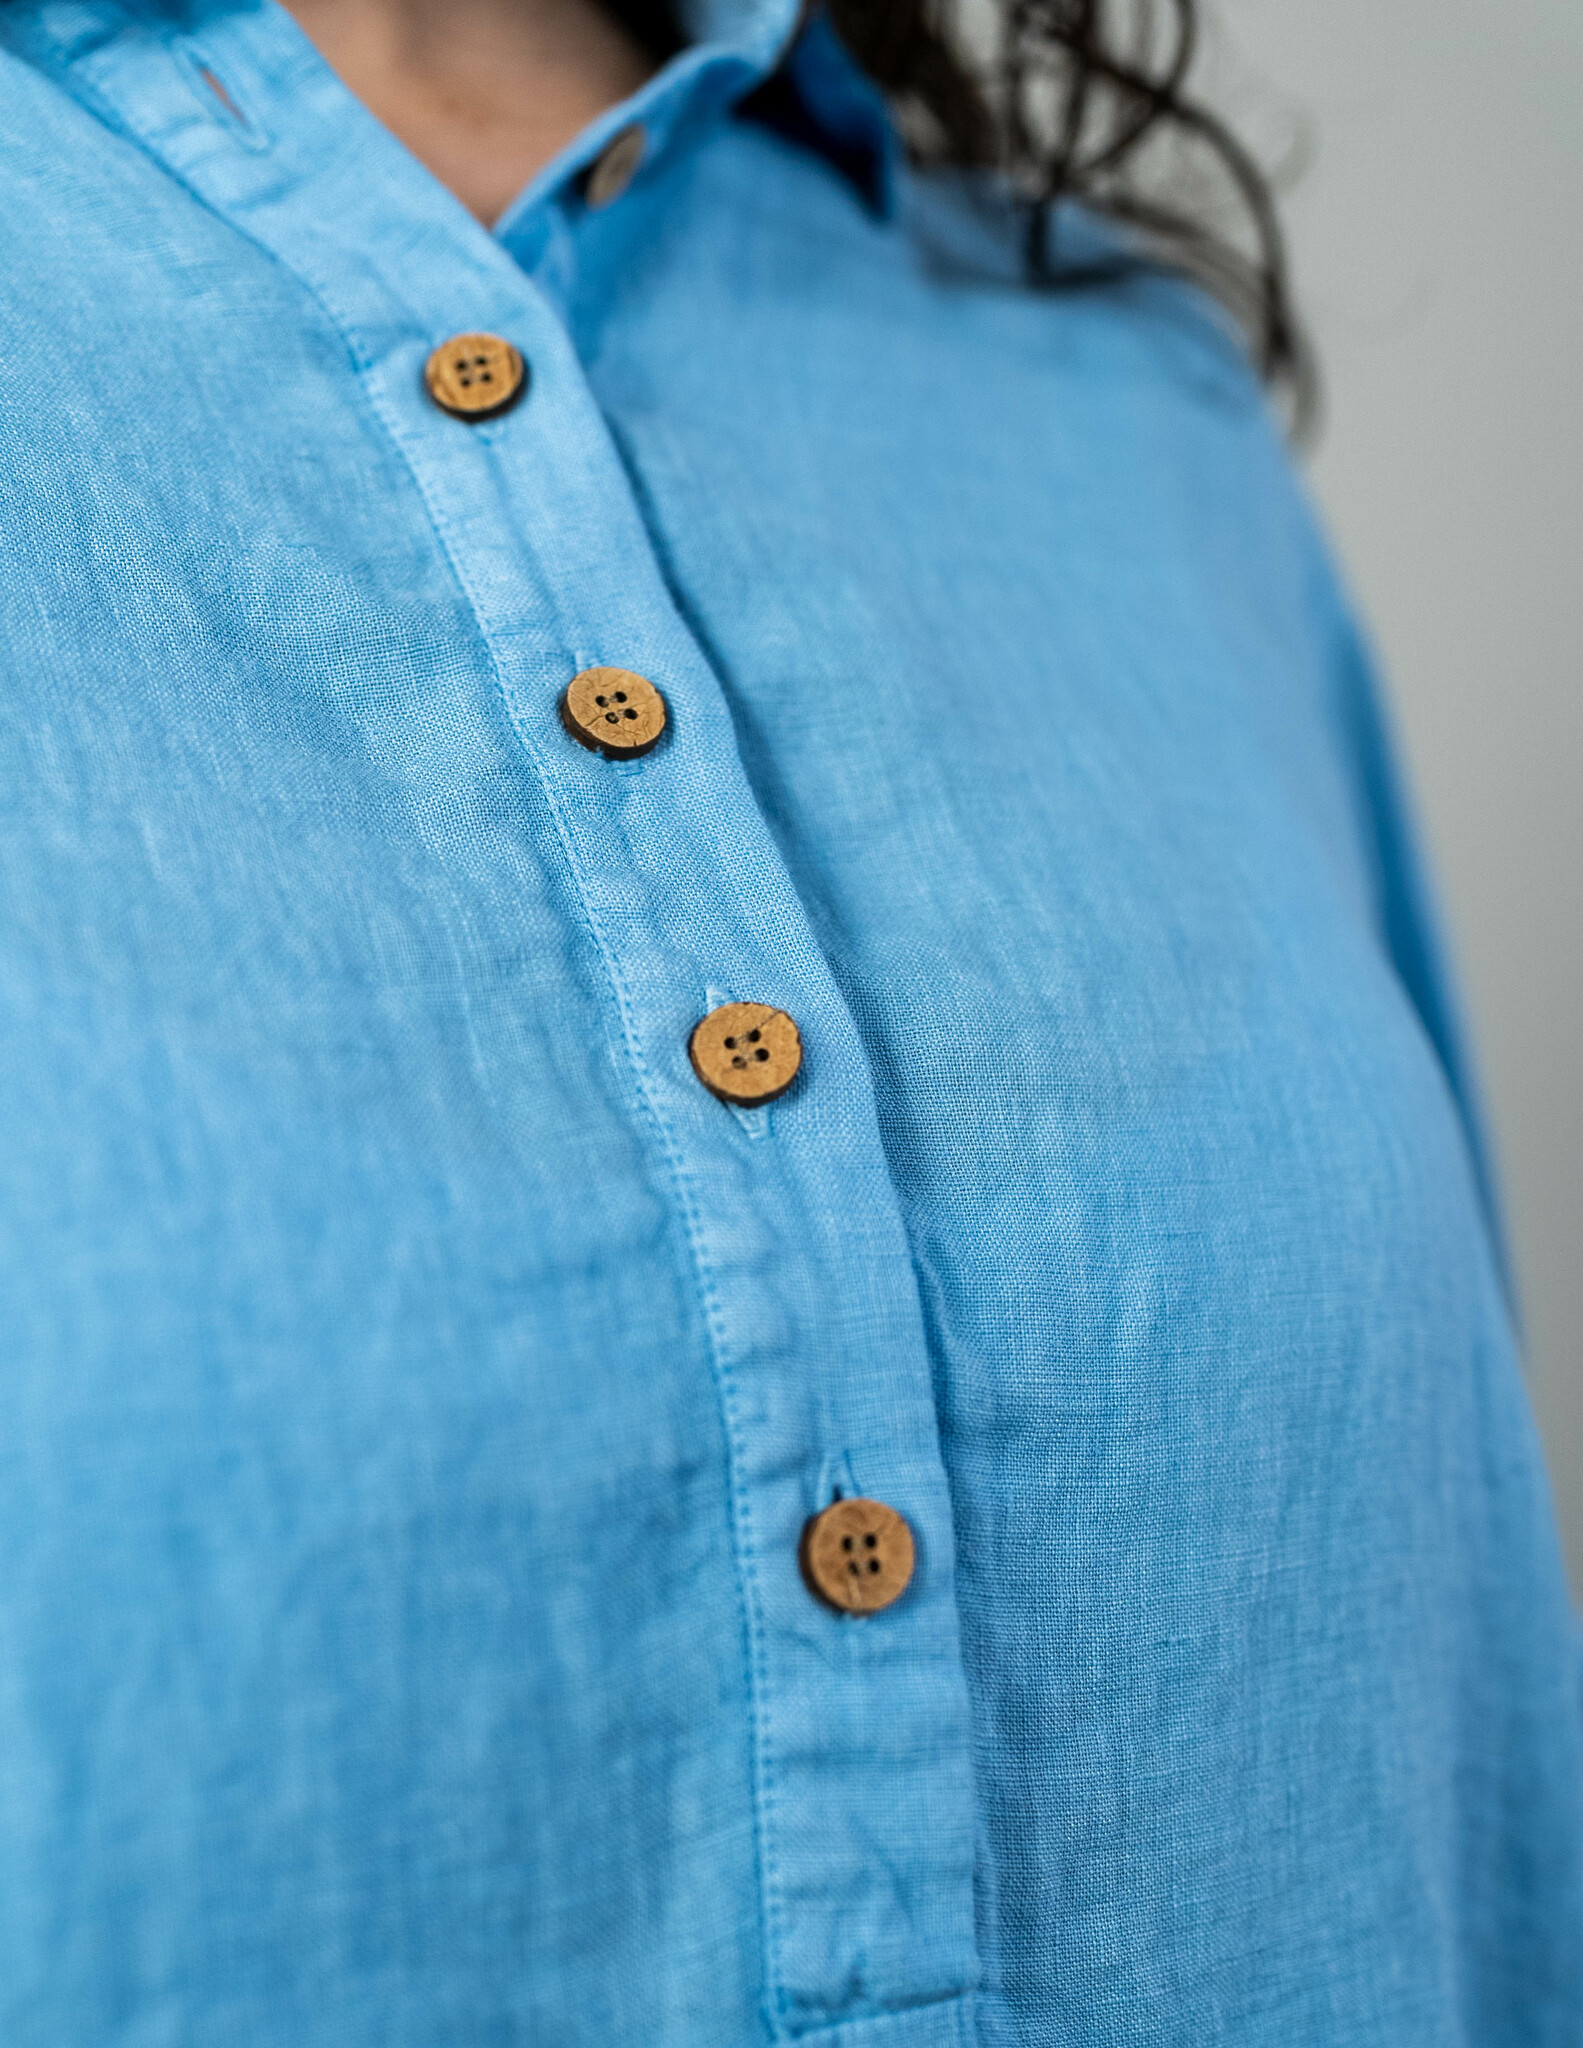 Ljus blå linneskjorta dam I Sval & luftig skjorta linne material I Hållbara sköna linneskjortor dam I Blå skjorta linne I Snygg damskjorta linne I Skjorta kort ärm dam I Blå skjorta oversize